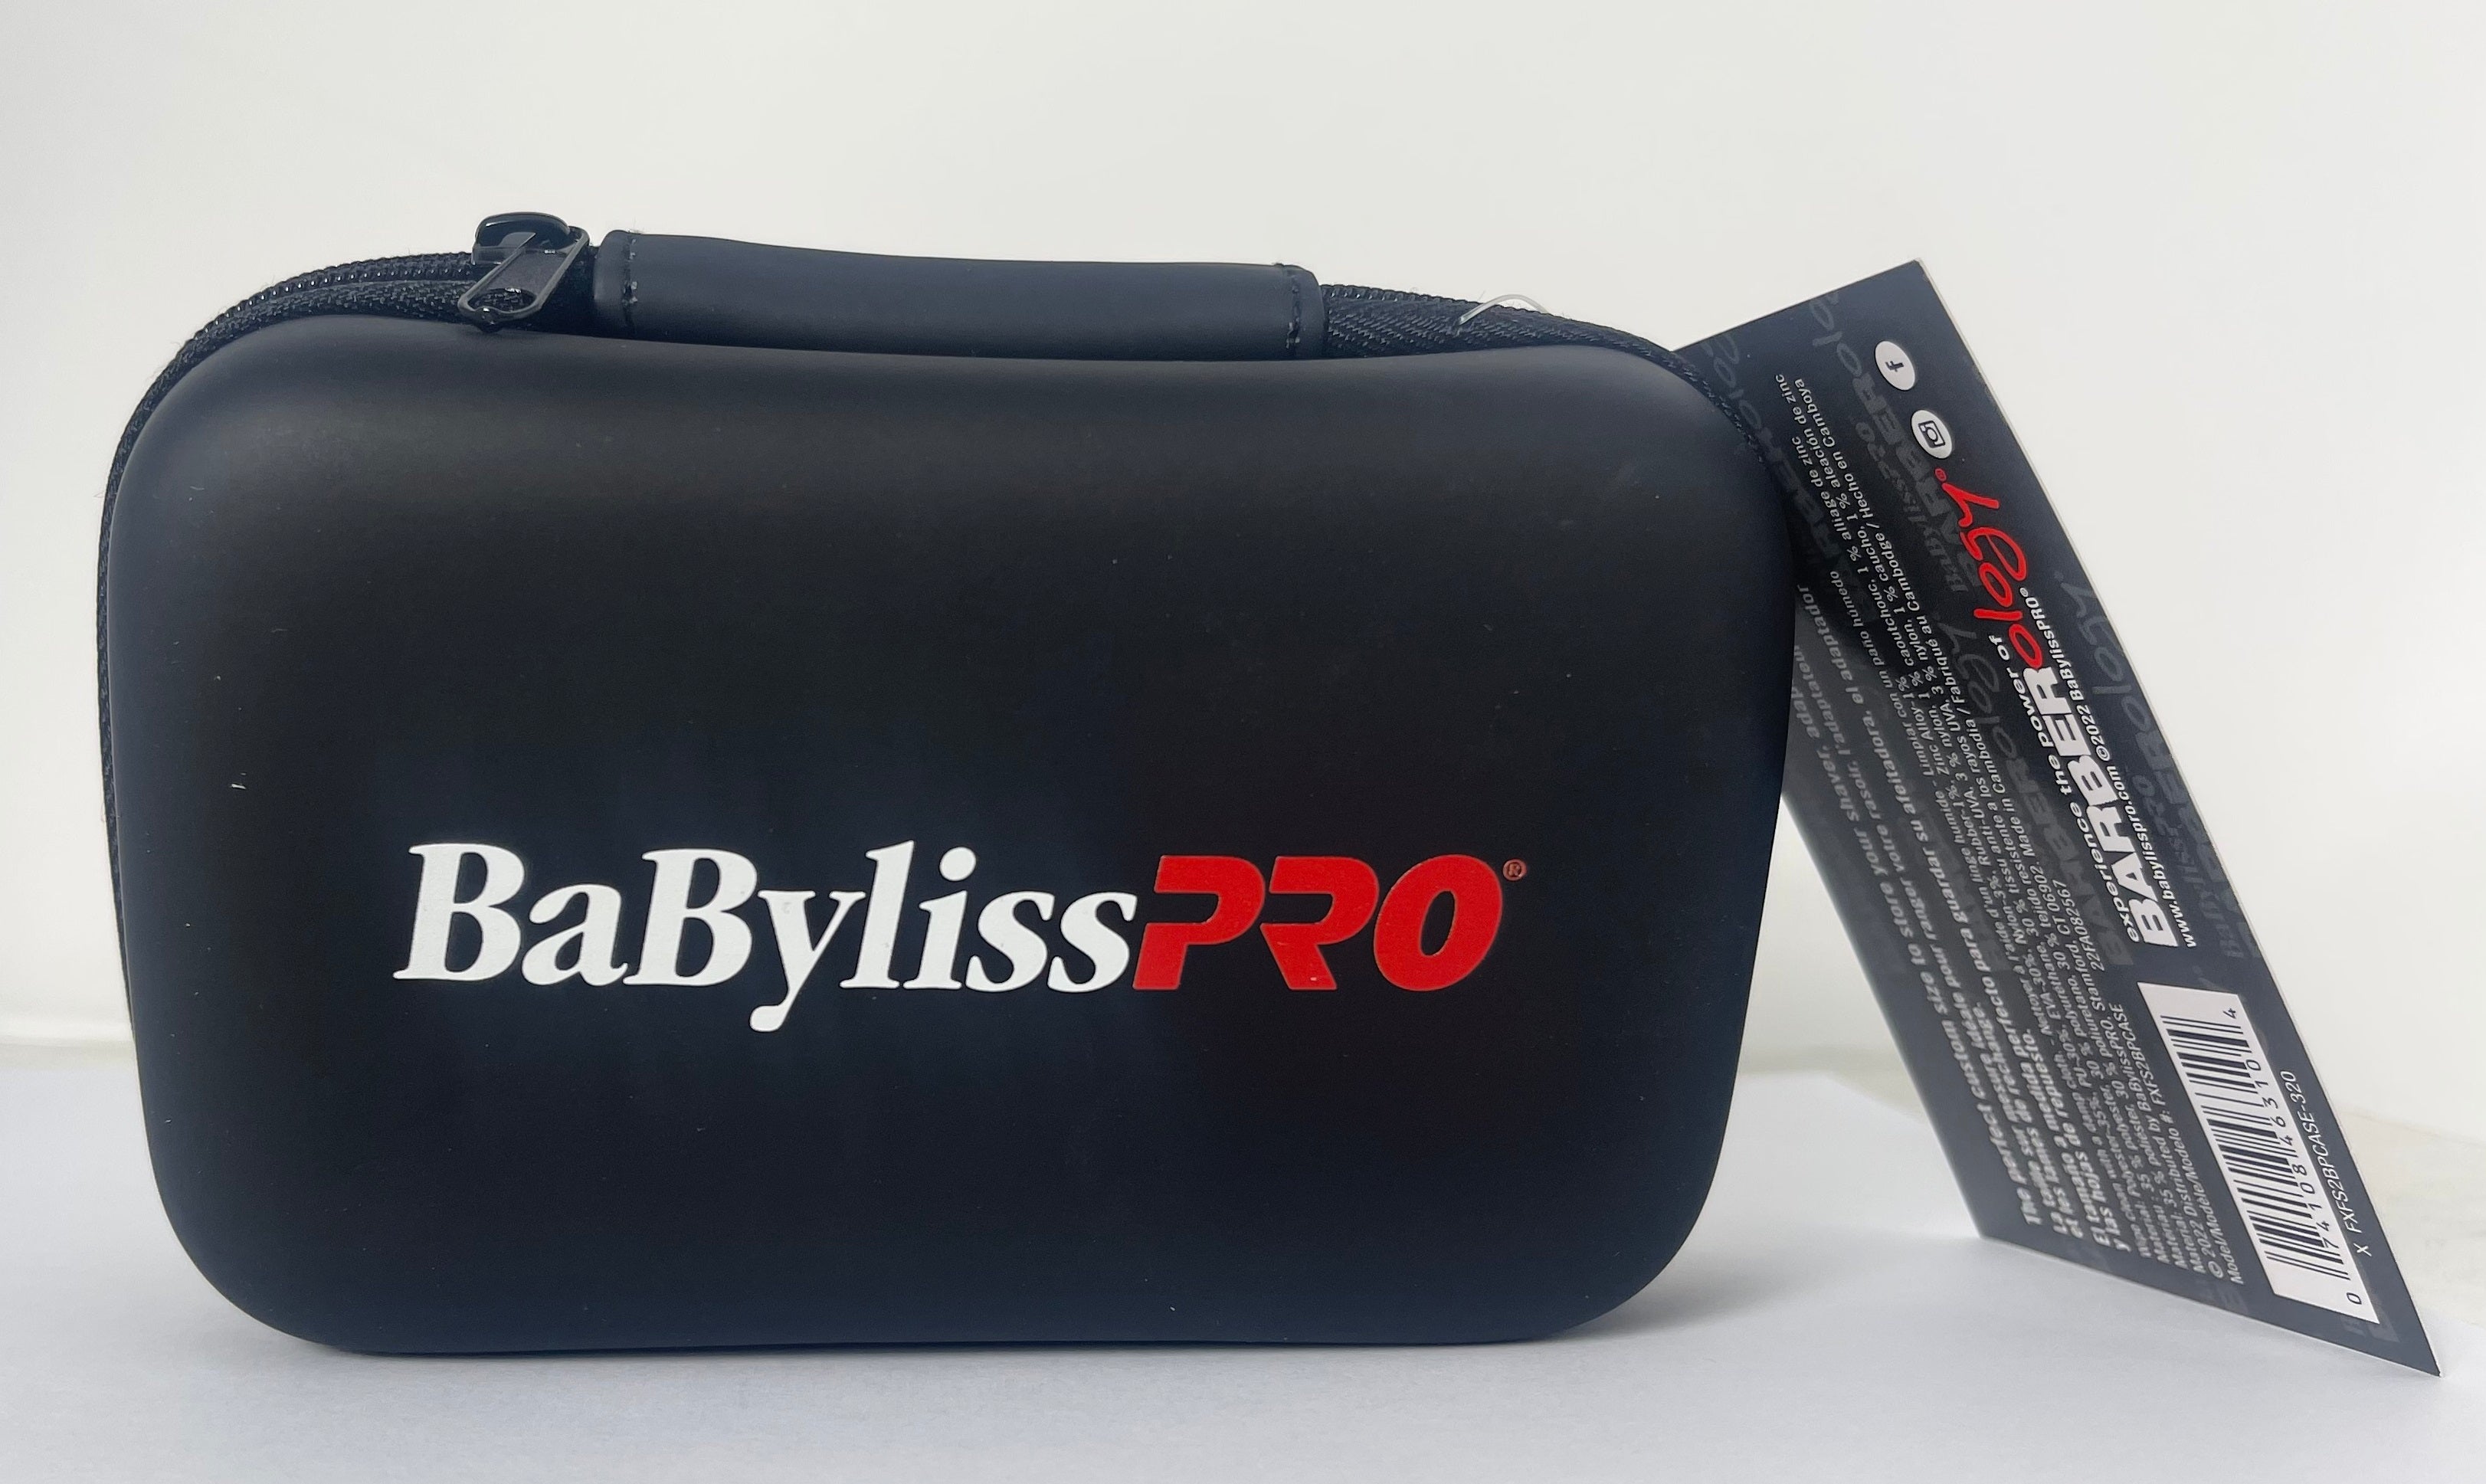 BaBylissPRO Barberology Foil Shaver Professional Carrying Case